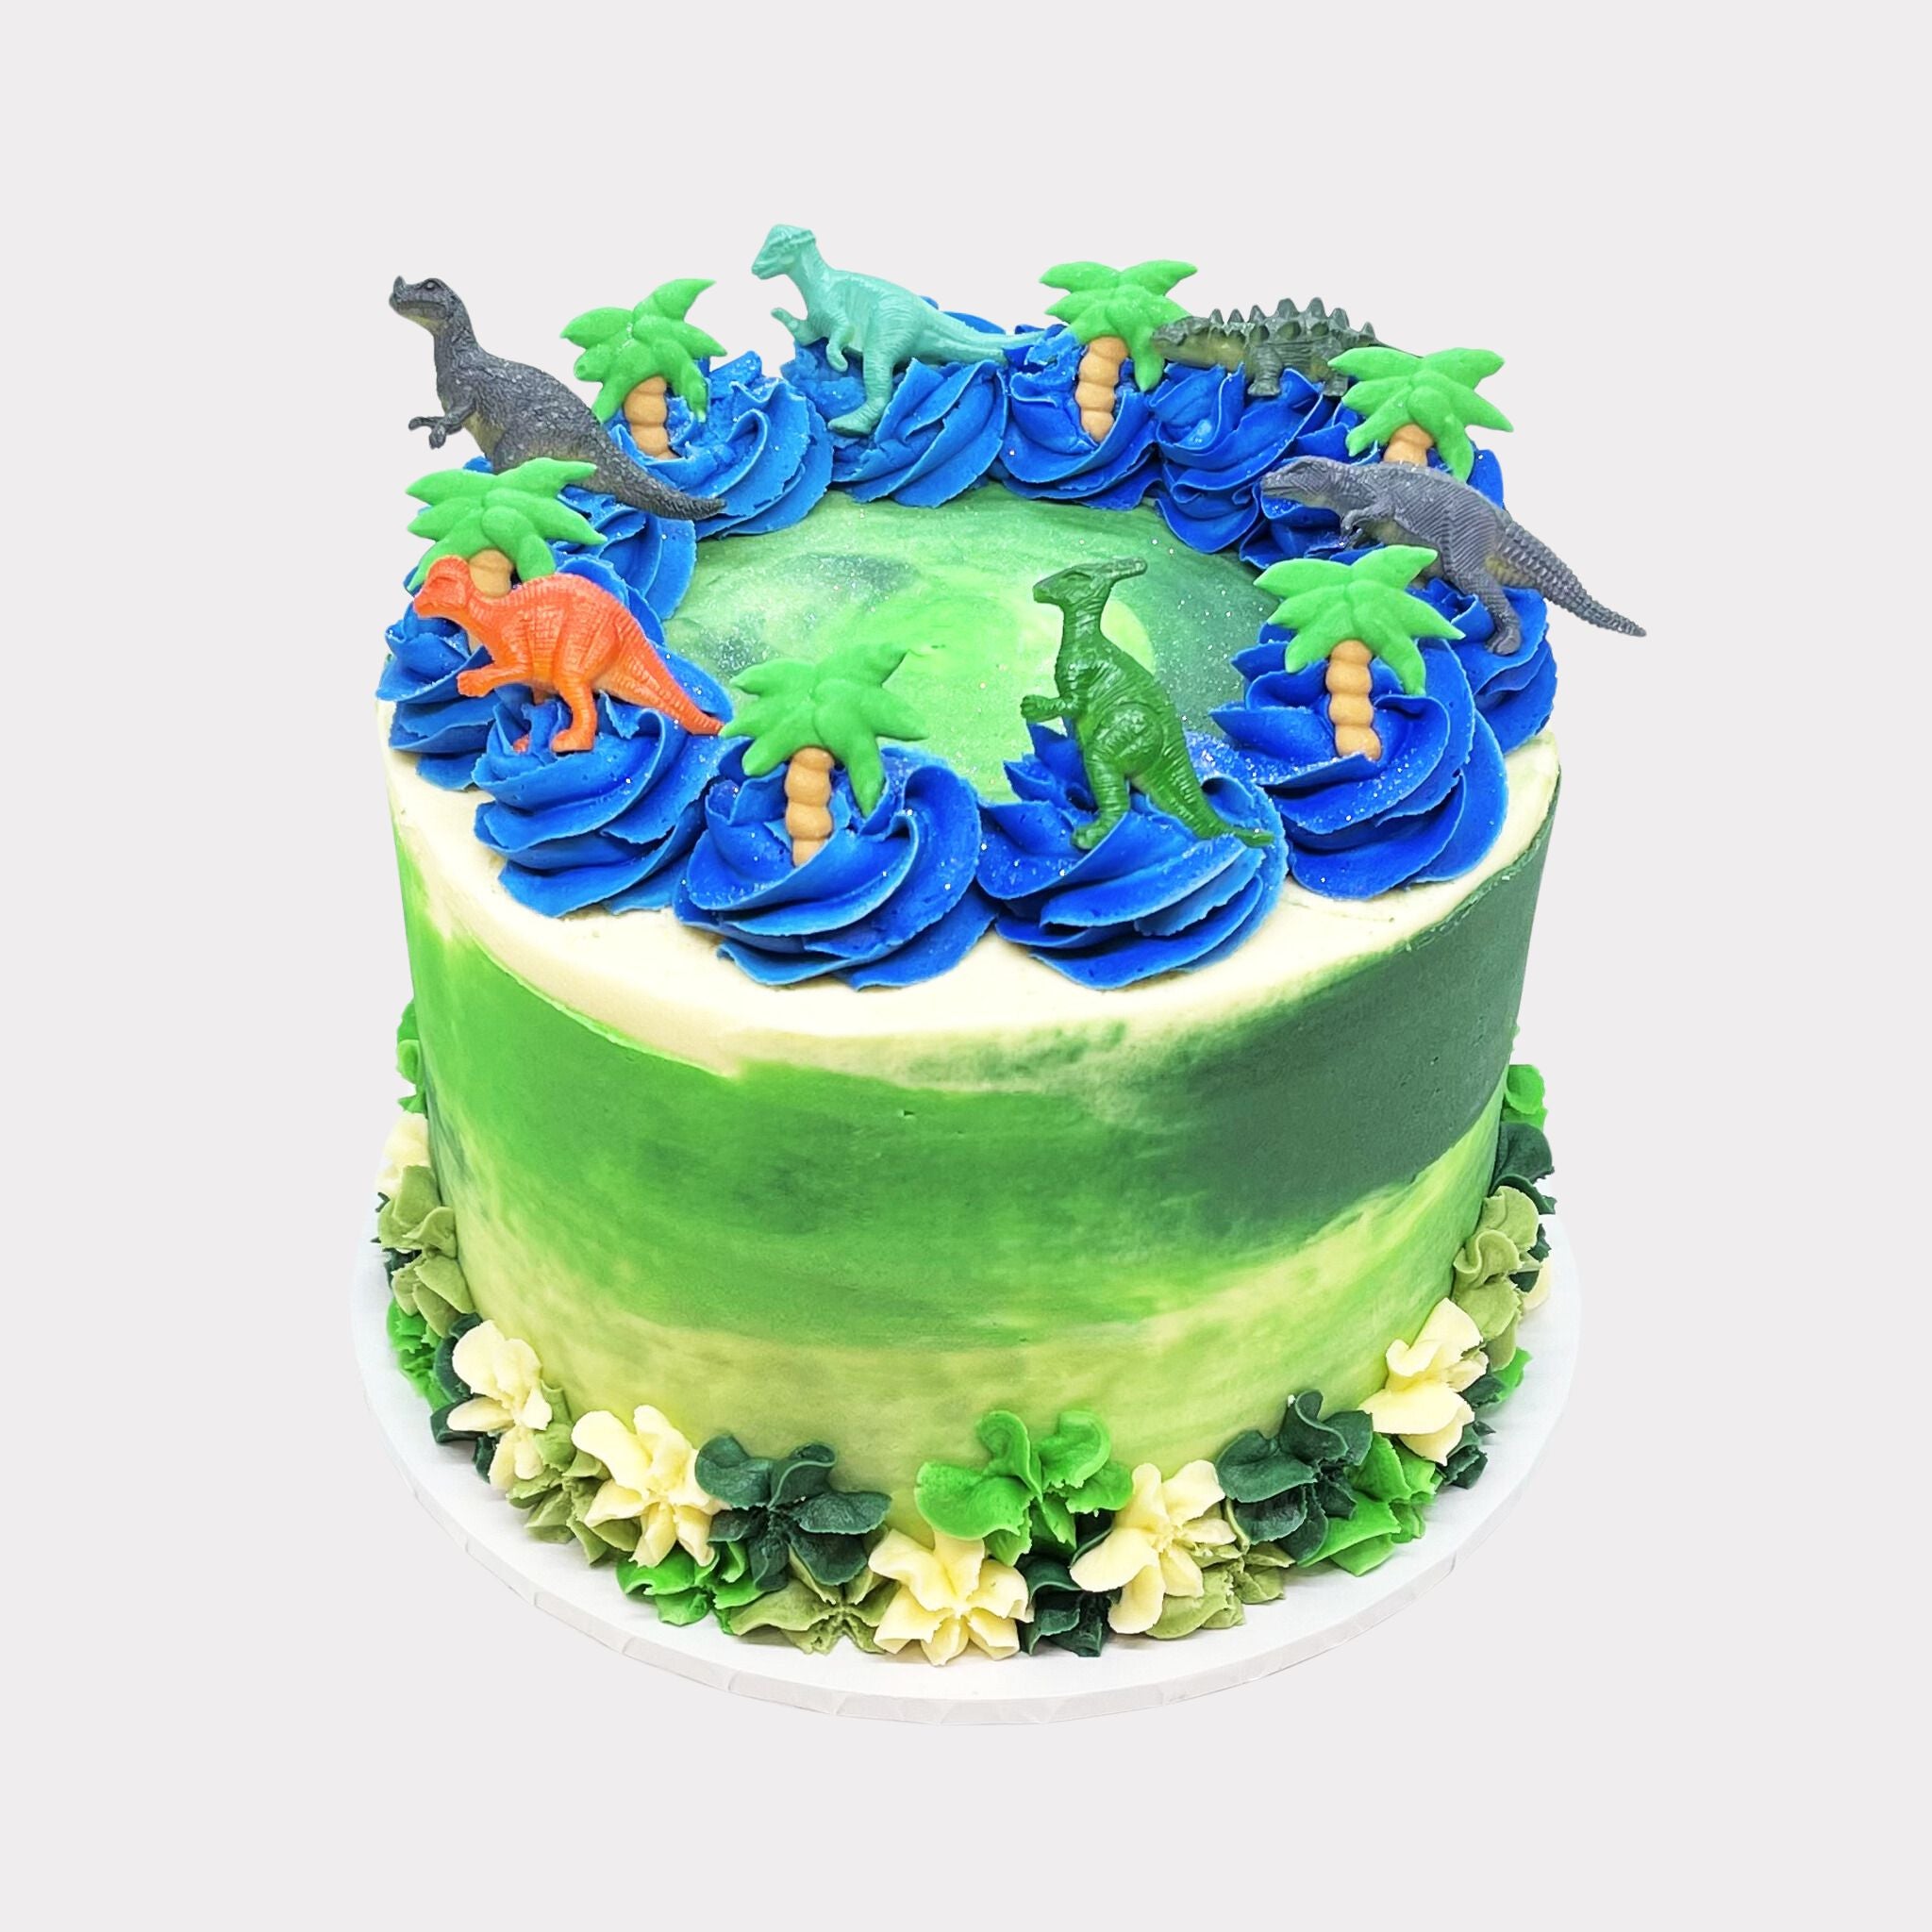 Dinosaur Cake